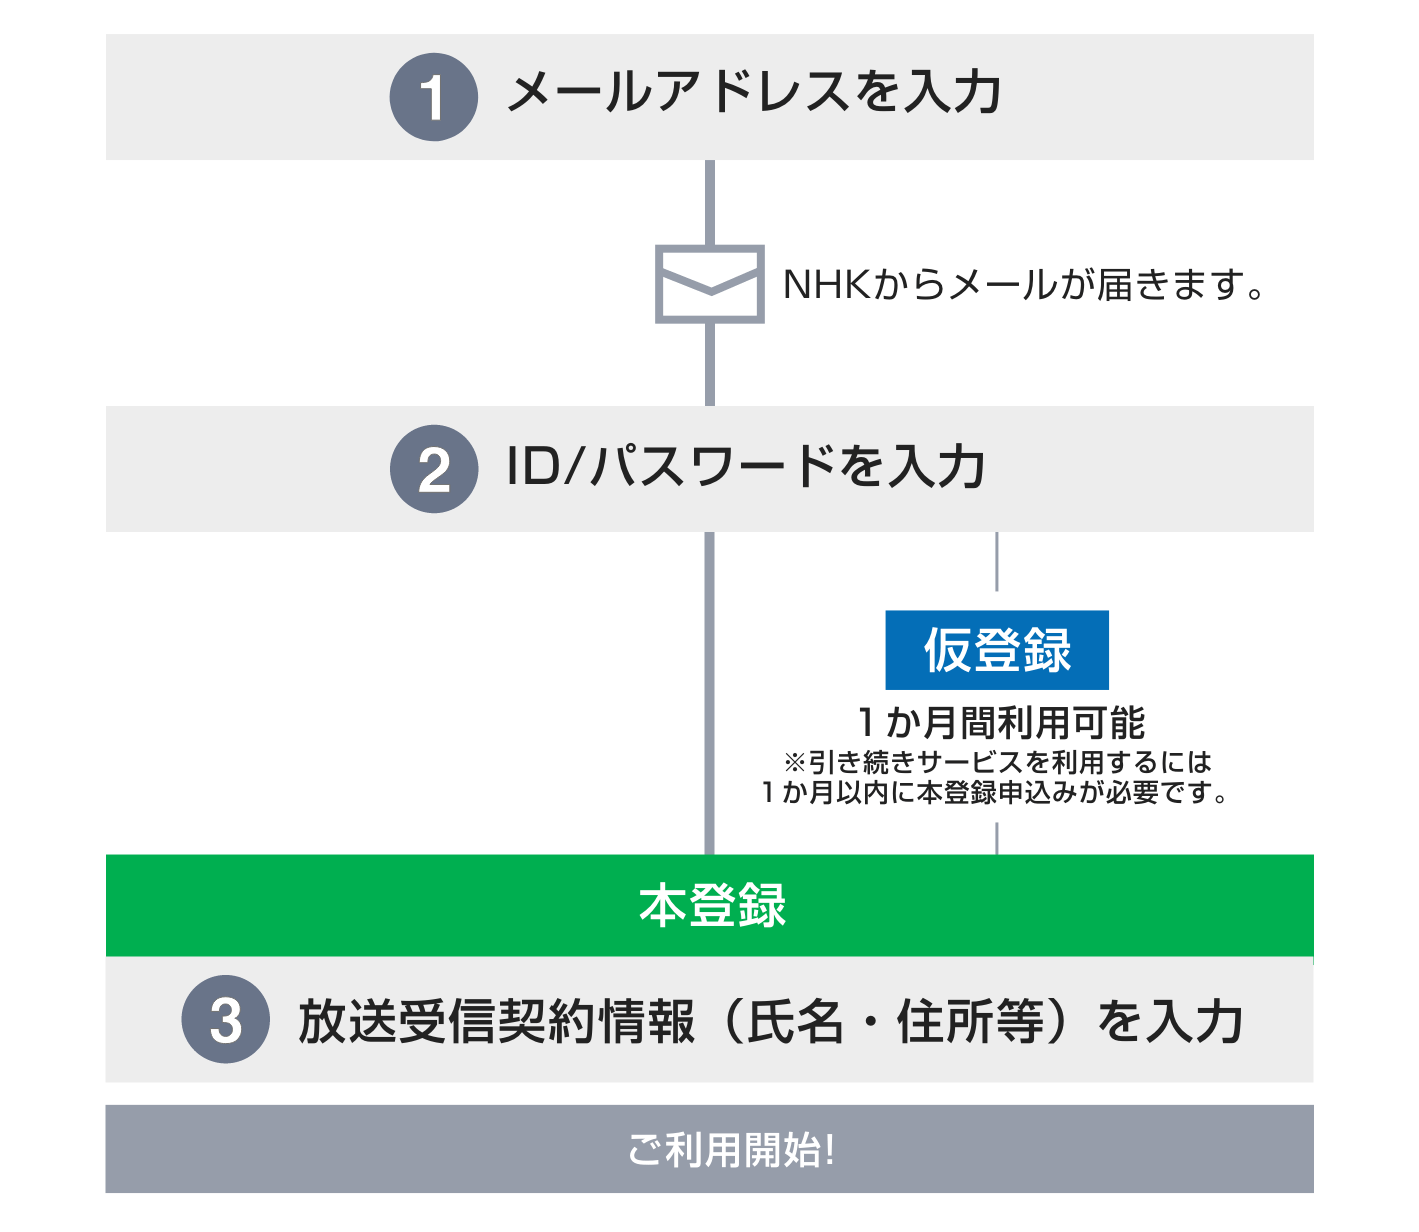 NHKプラス「 マイページにアクセス時にシステム障害発生 」のバグが発生してるひと | テック・アイ技術情報研究所